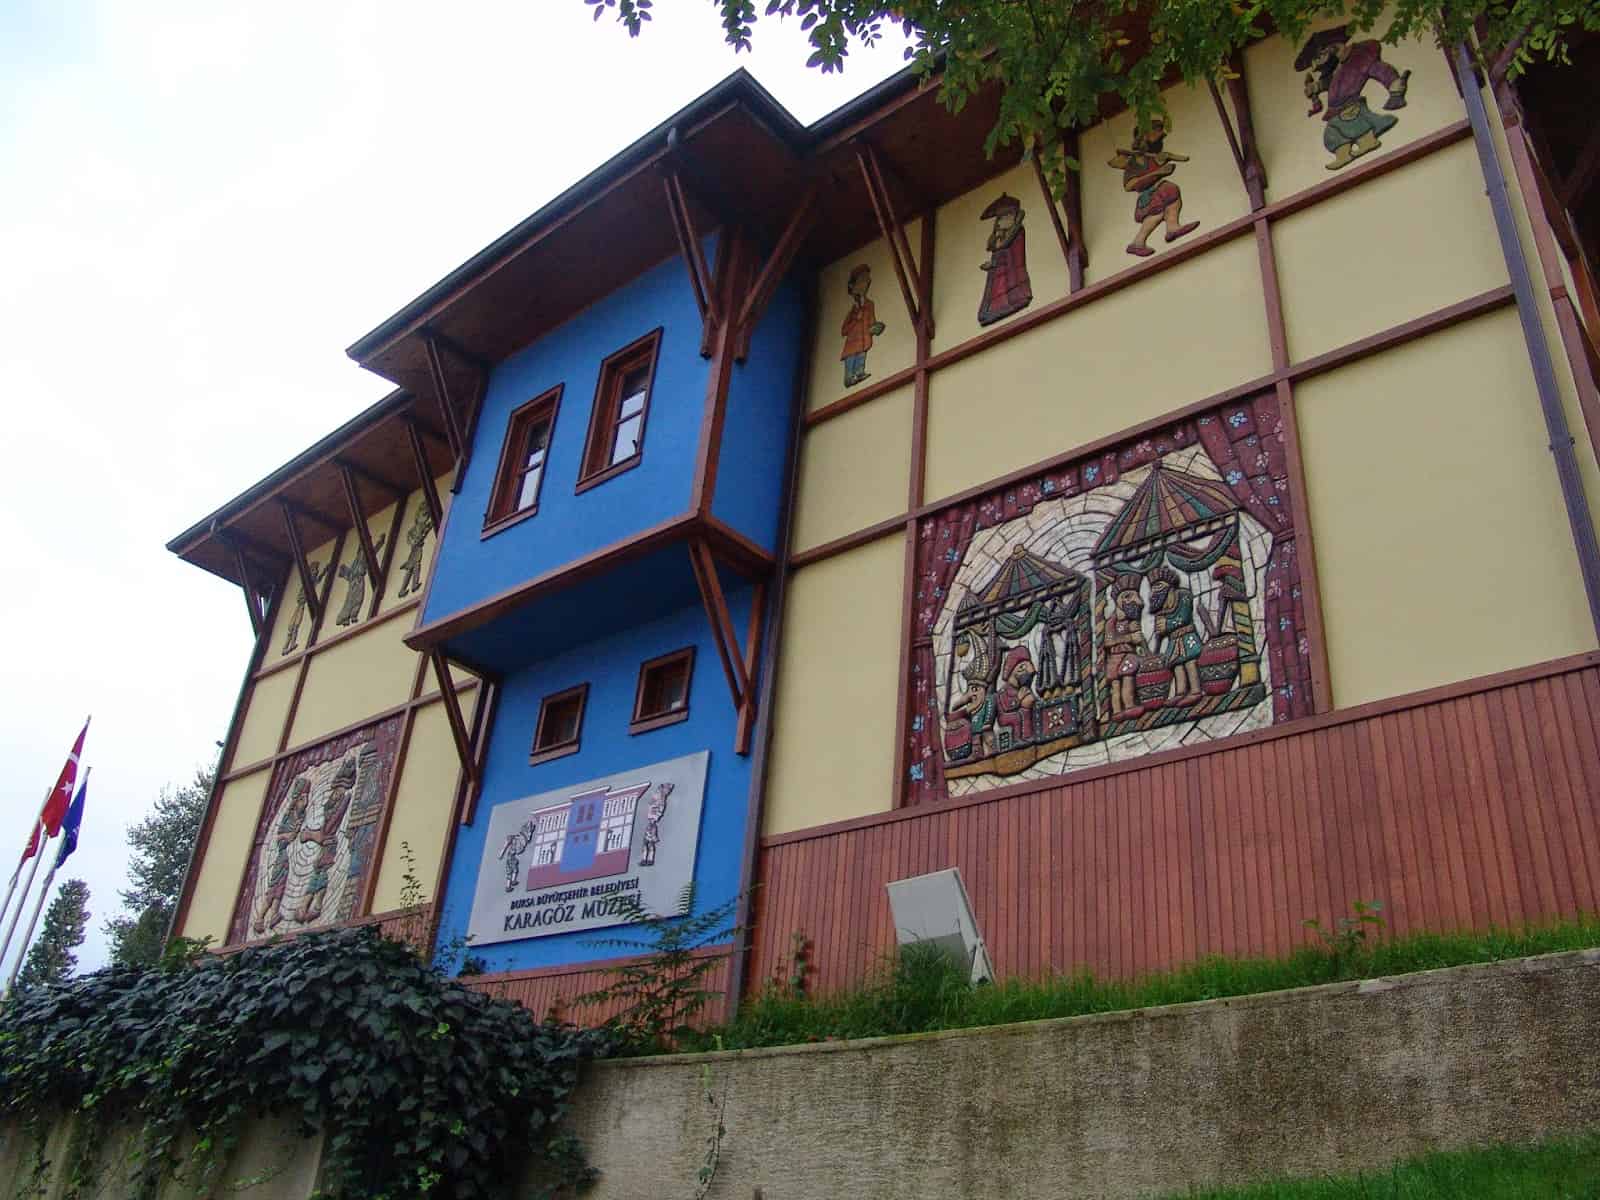 Karagöz Museum in Çekirge, Bursa, Turkey